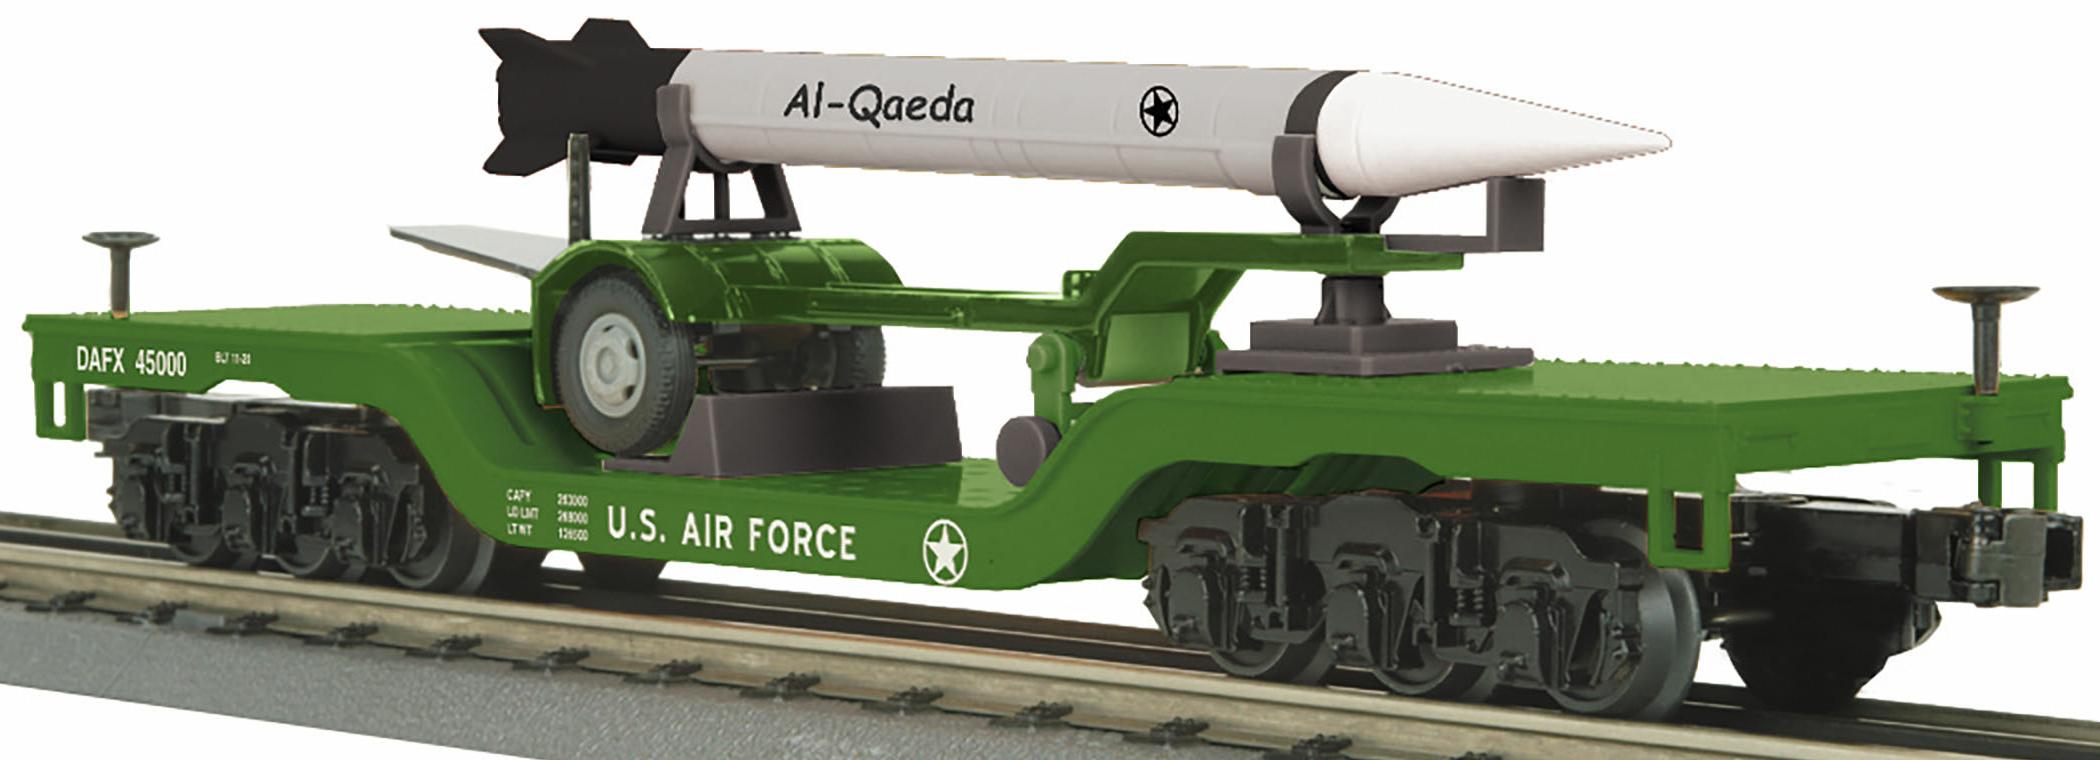 Dep. Center Flat Car w/Rocket Load - U.S. Air Force (Al-Qaeda) image